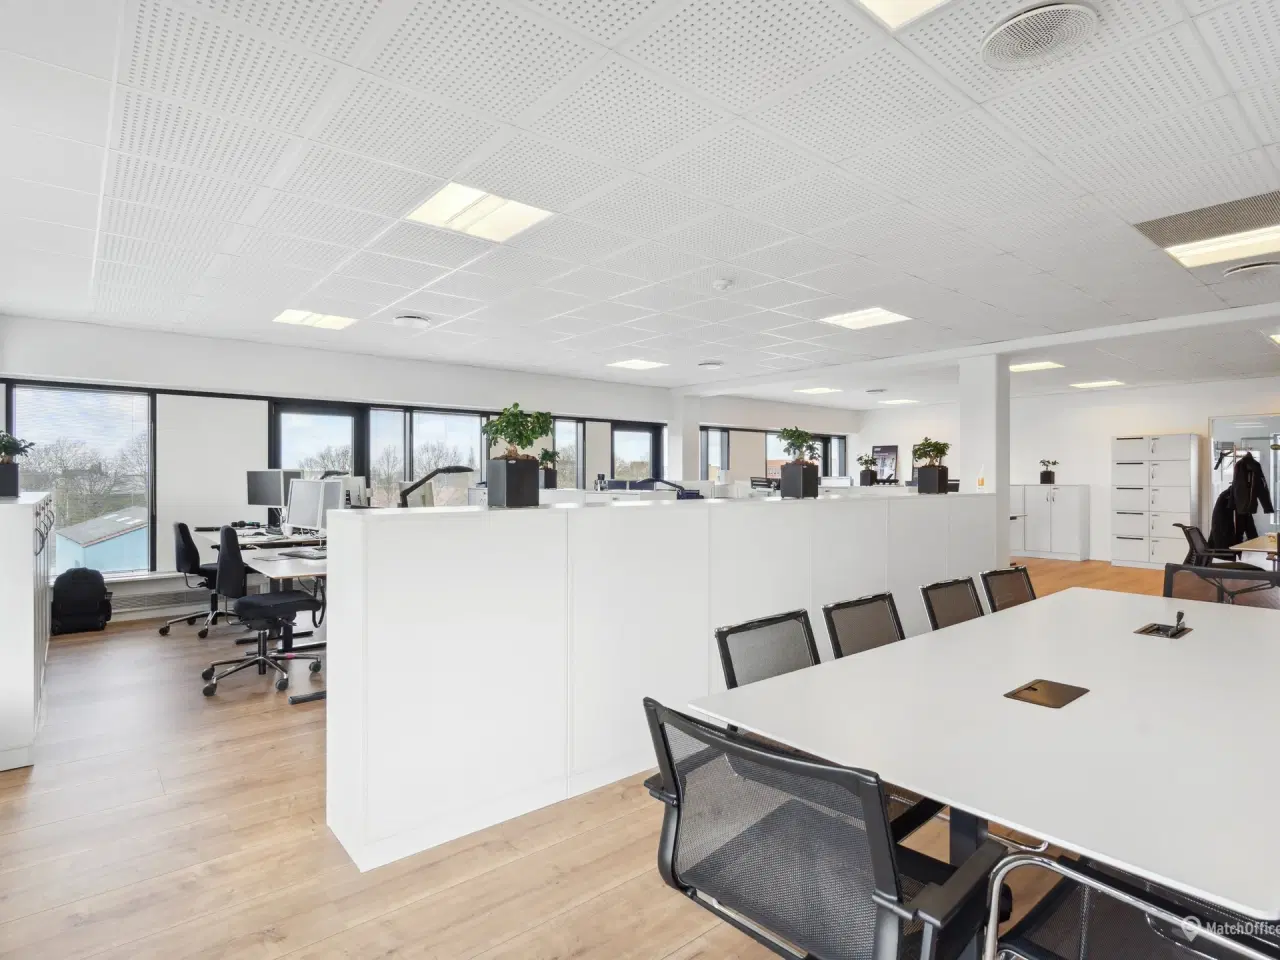 Billede 5 - 342 m² kontor beliggende i meget præsentabel kontorejendom